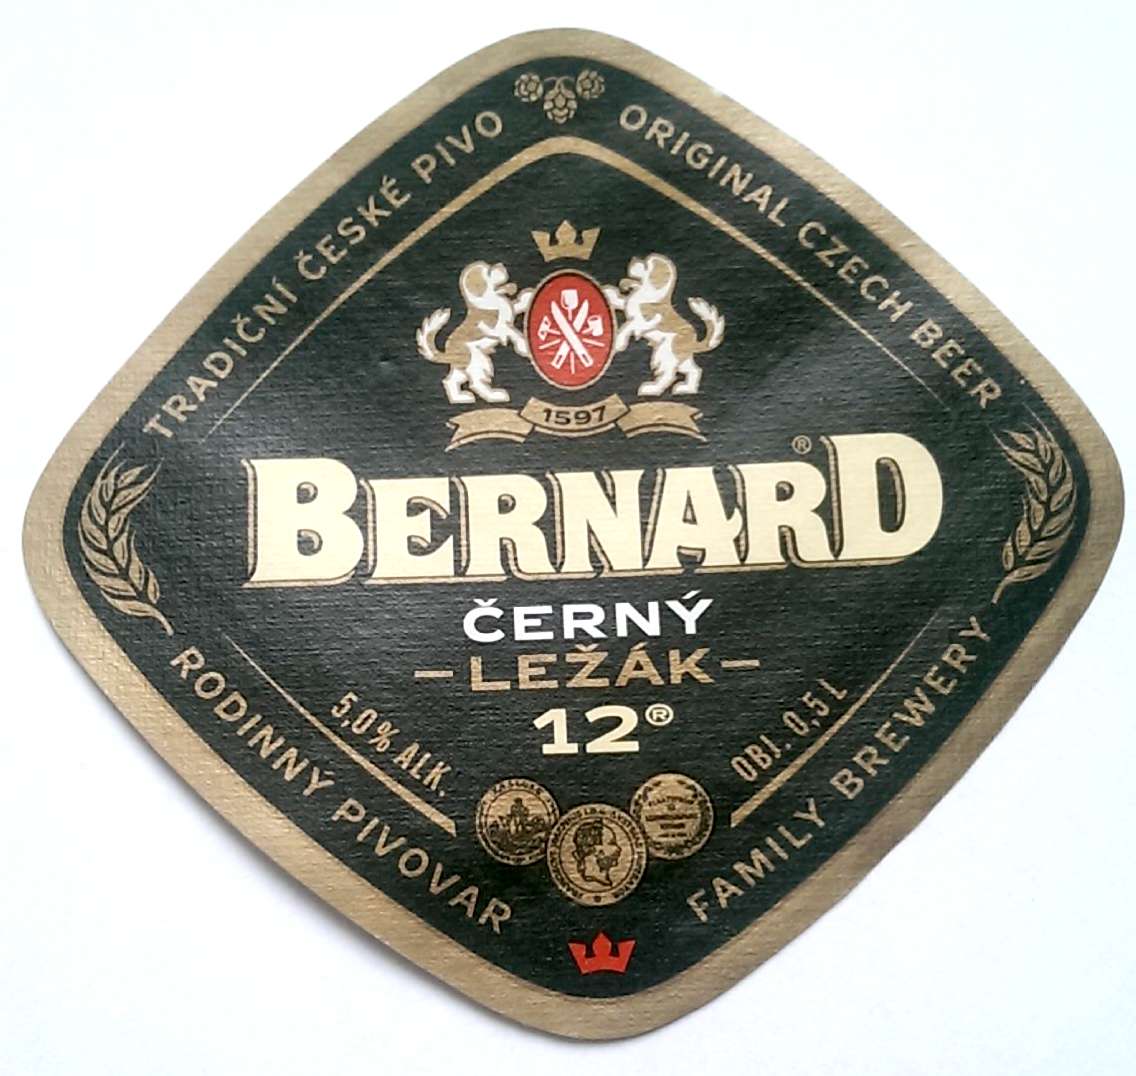 Bernard Cerny lezak 12 0,5L v2